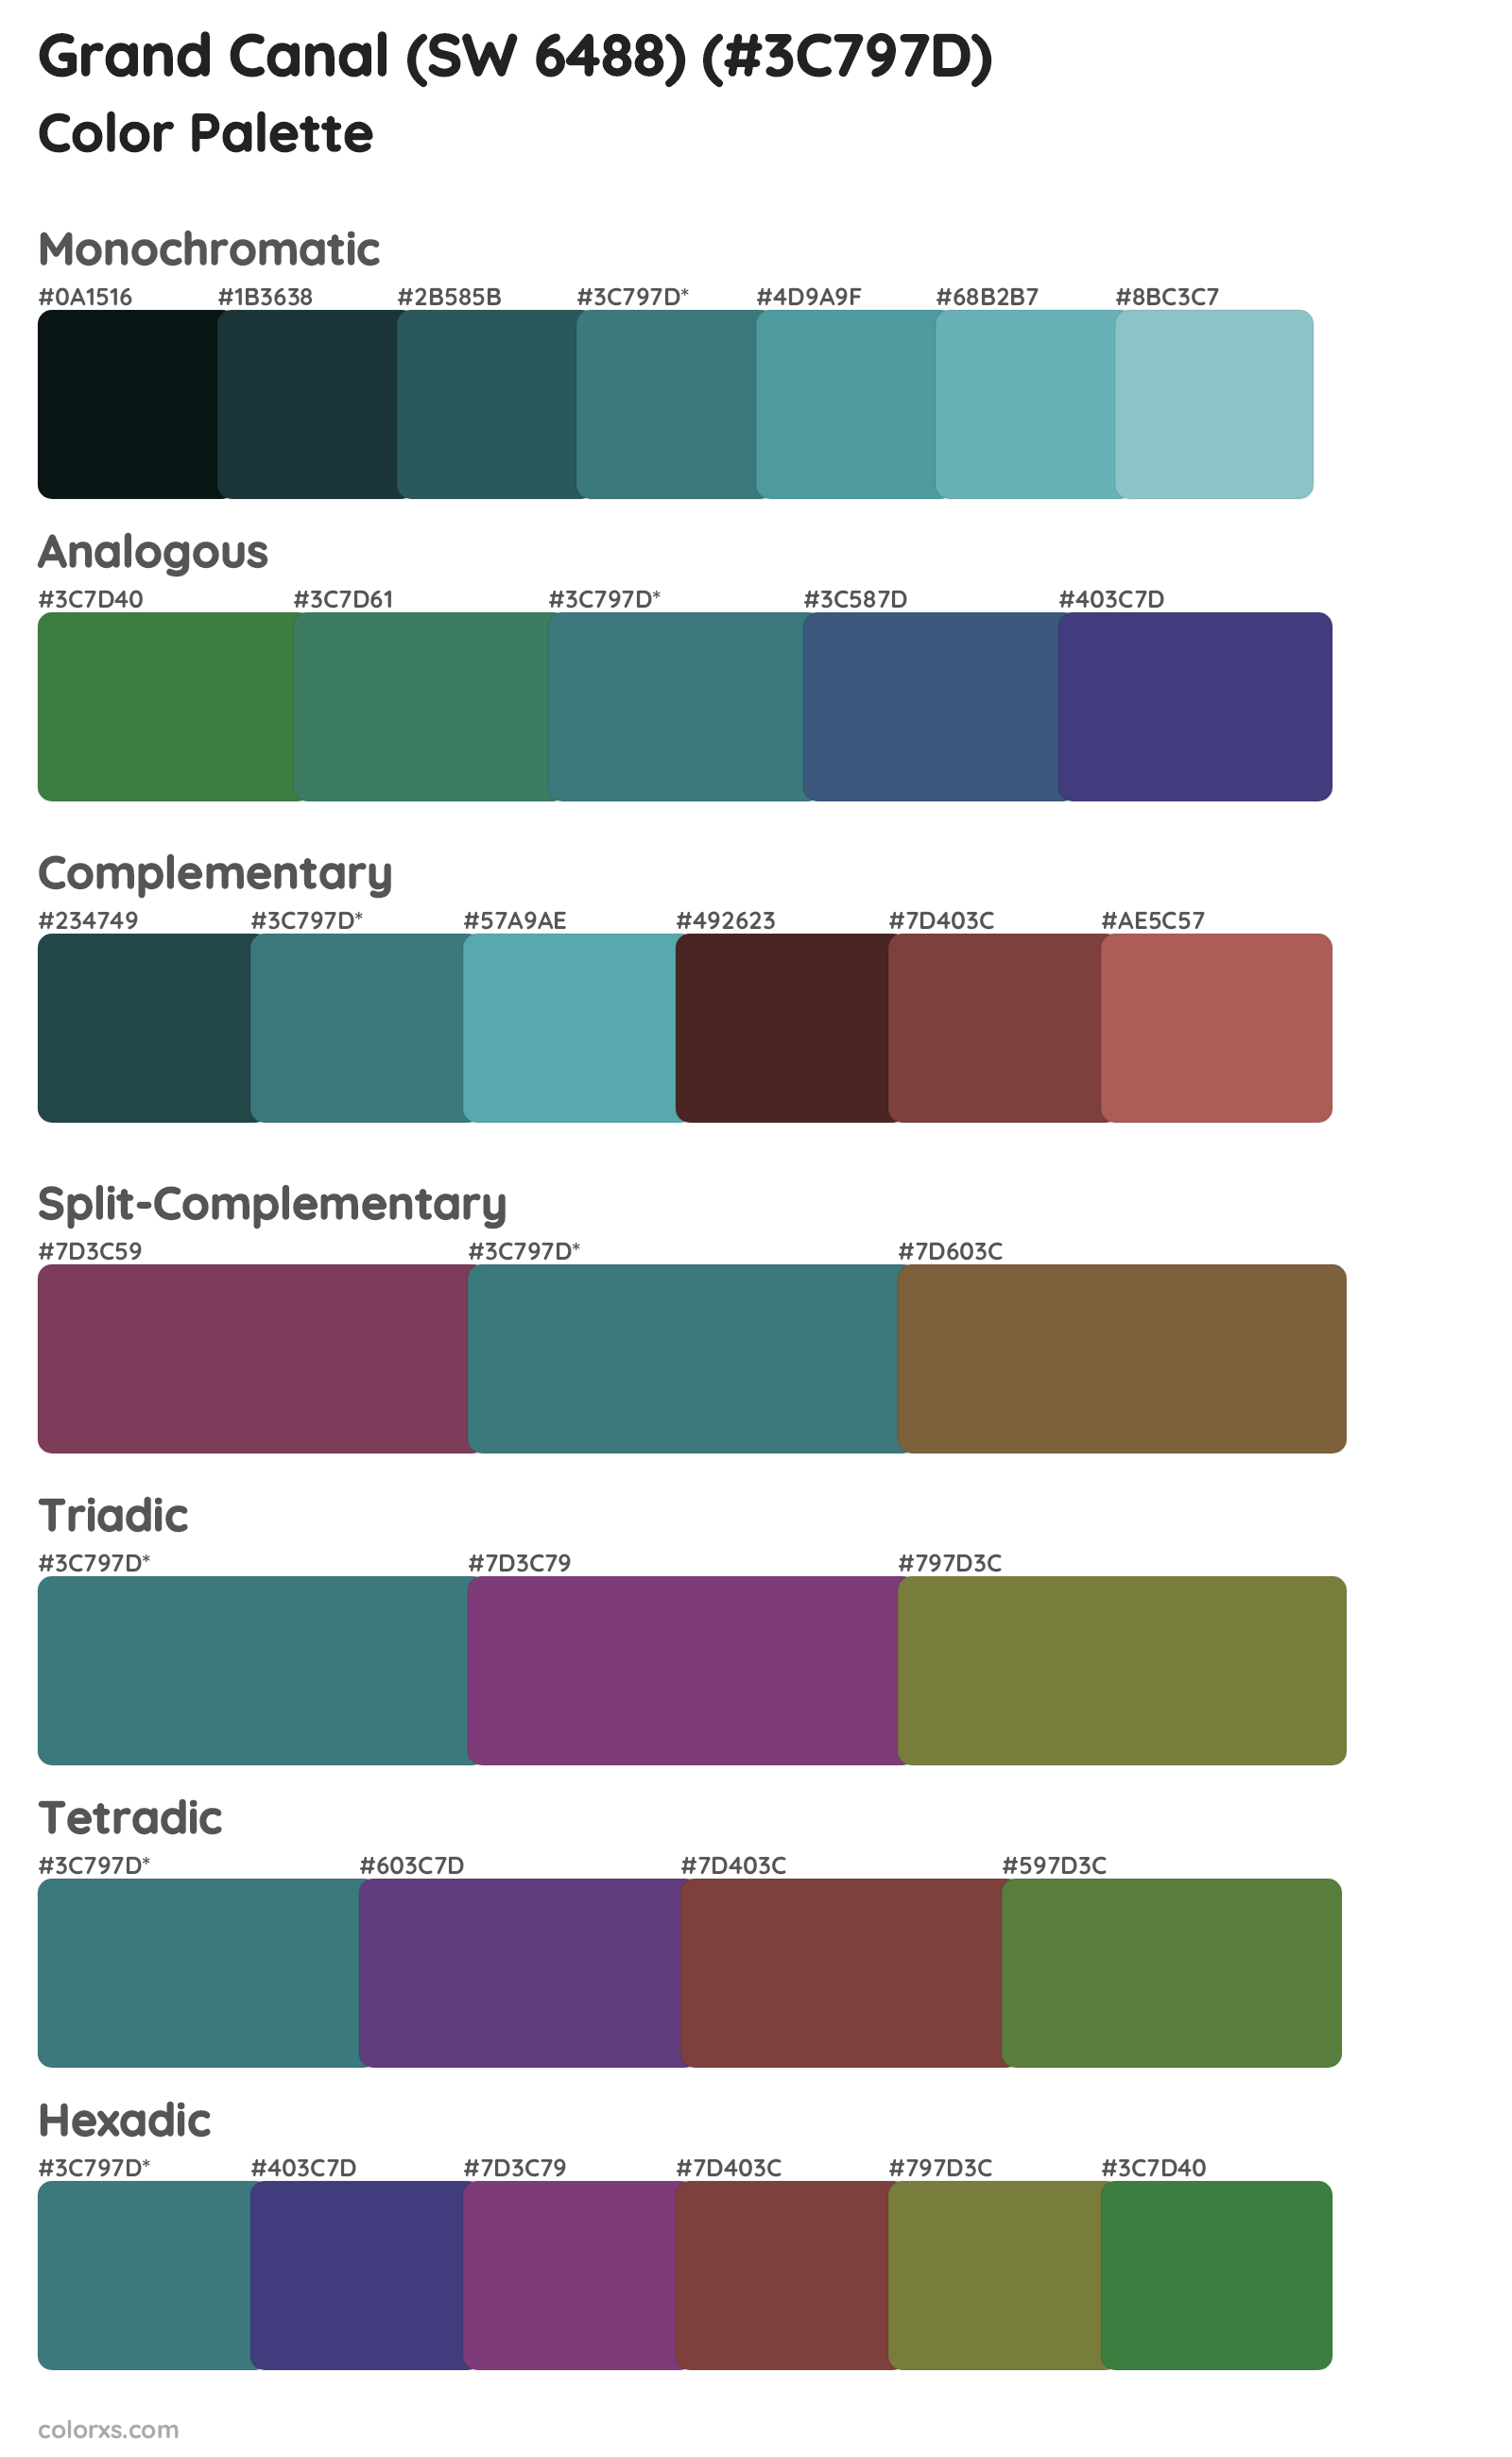 Grand Canal (SW 6488) Color Scheme Palettes